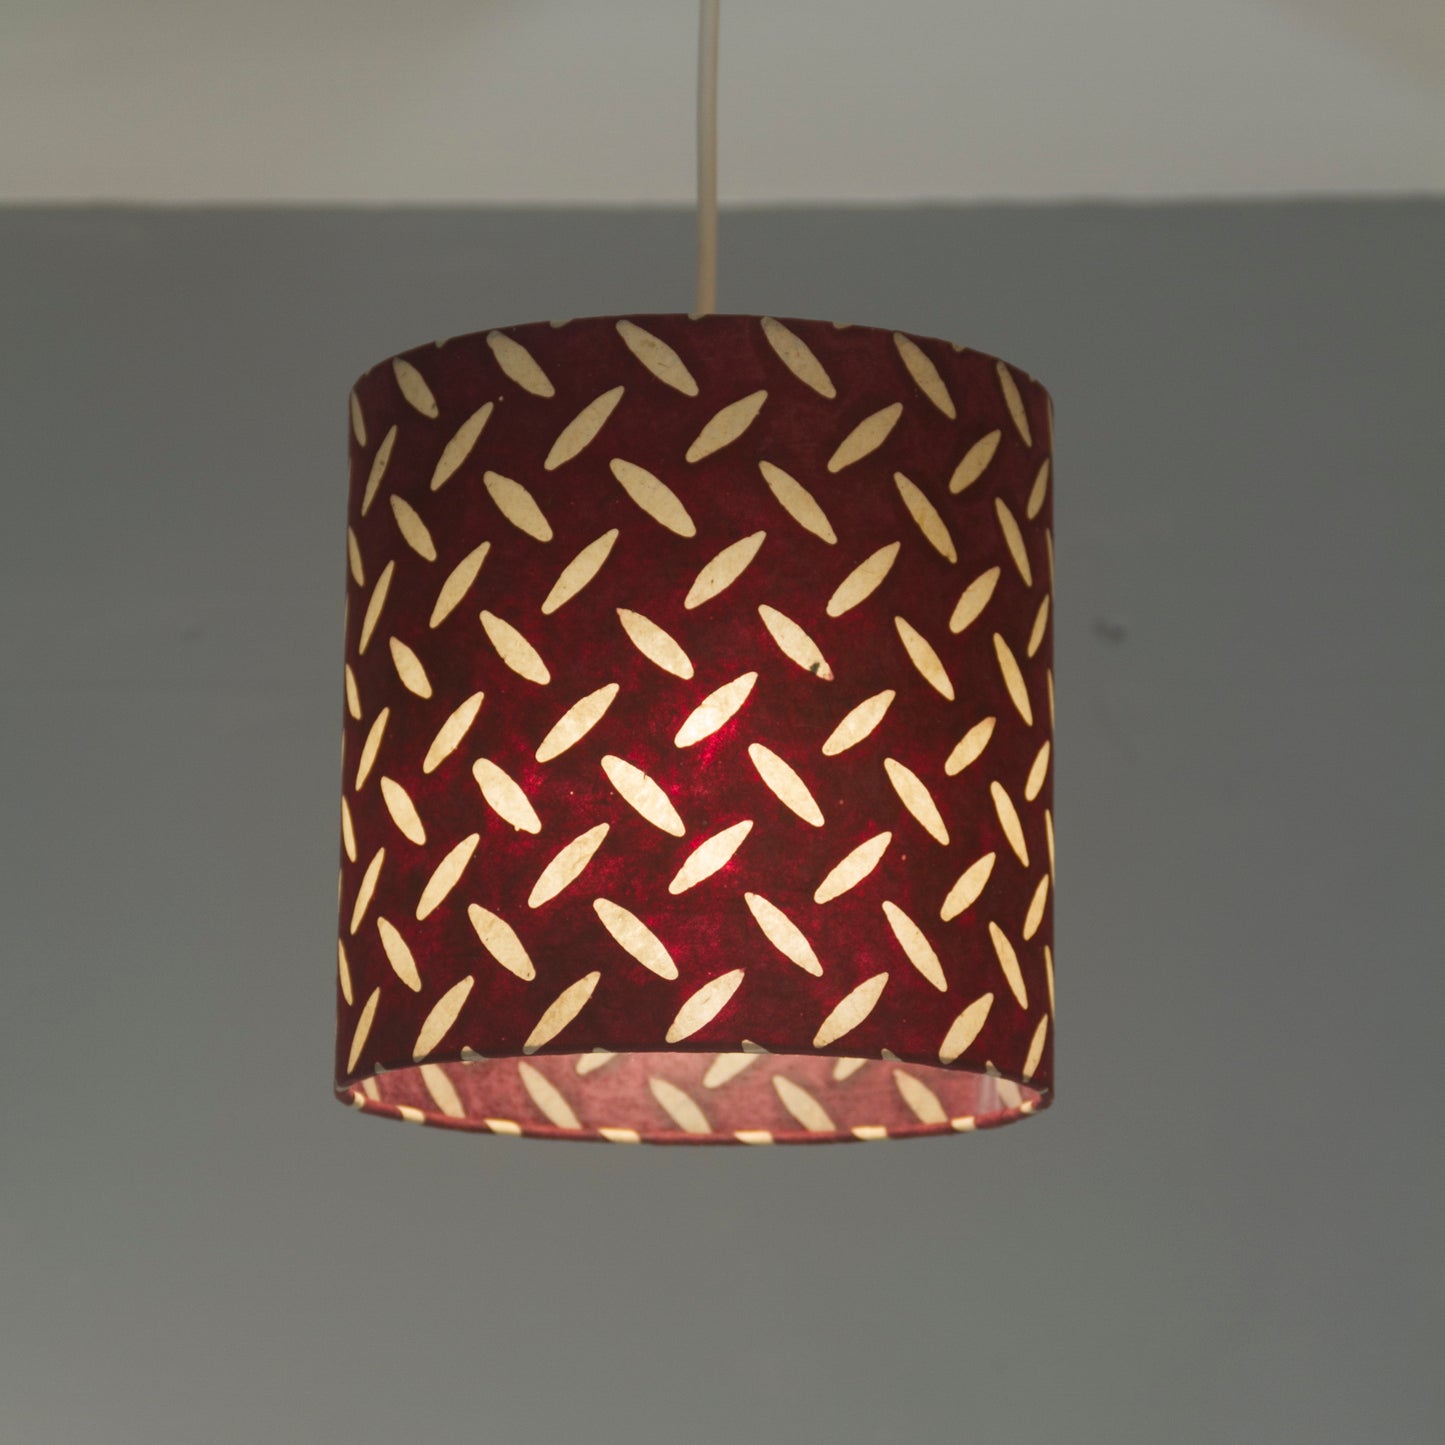 Drum Lamp Shade - P14 - Batik Tread Plate Cranberry, 50cm(d) x 20cm(h)